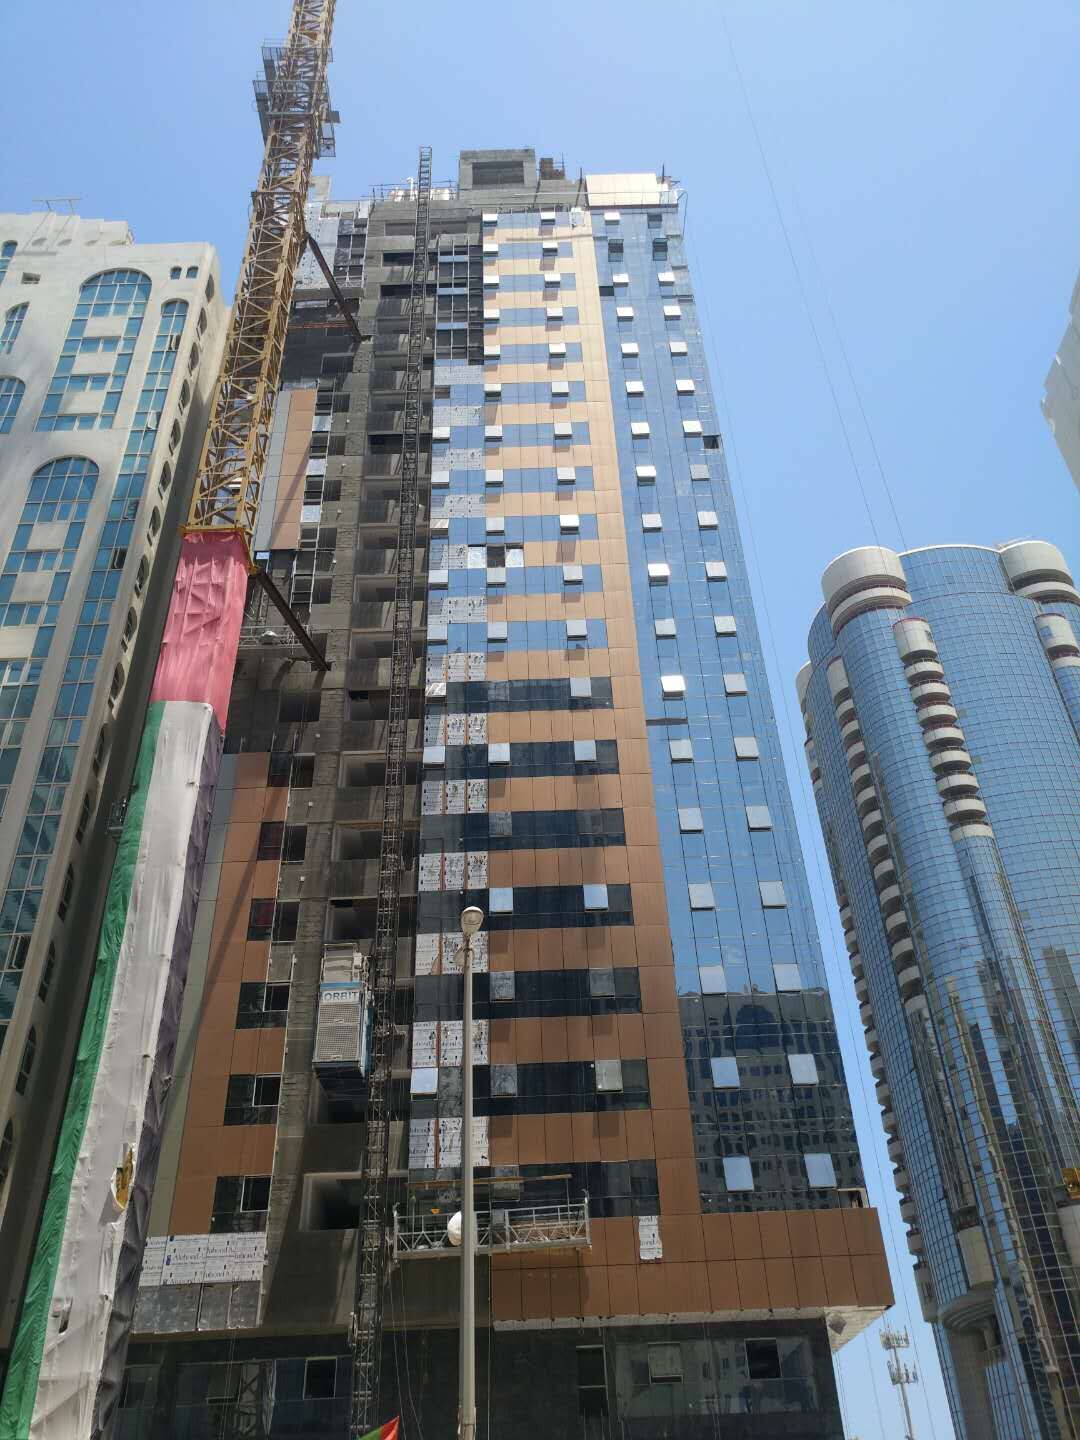 凯斯博电梯为阿联酋阿布扎比沙新塔项目提供设备